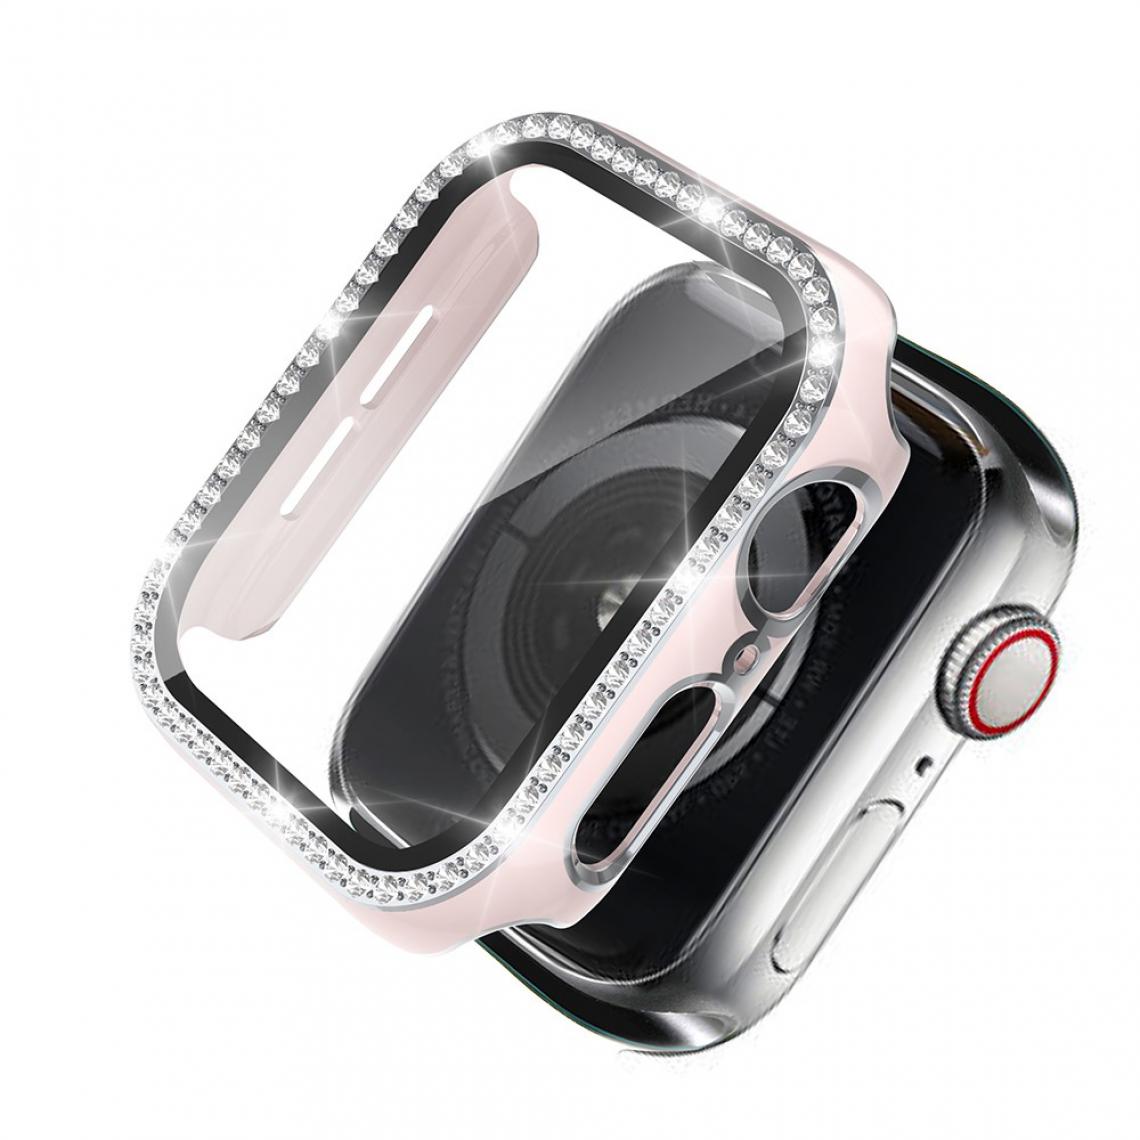 Other - Coque en TPU Cadre en cristal de galvanoplastie Rose/Argent pour votre Apple Watch 4/5/6/SE 40mm - Accessoires bracelet connecté